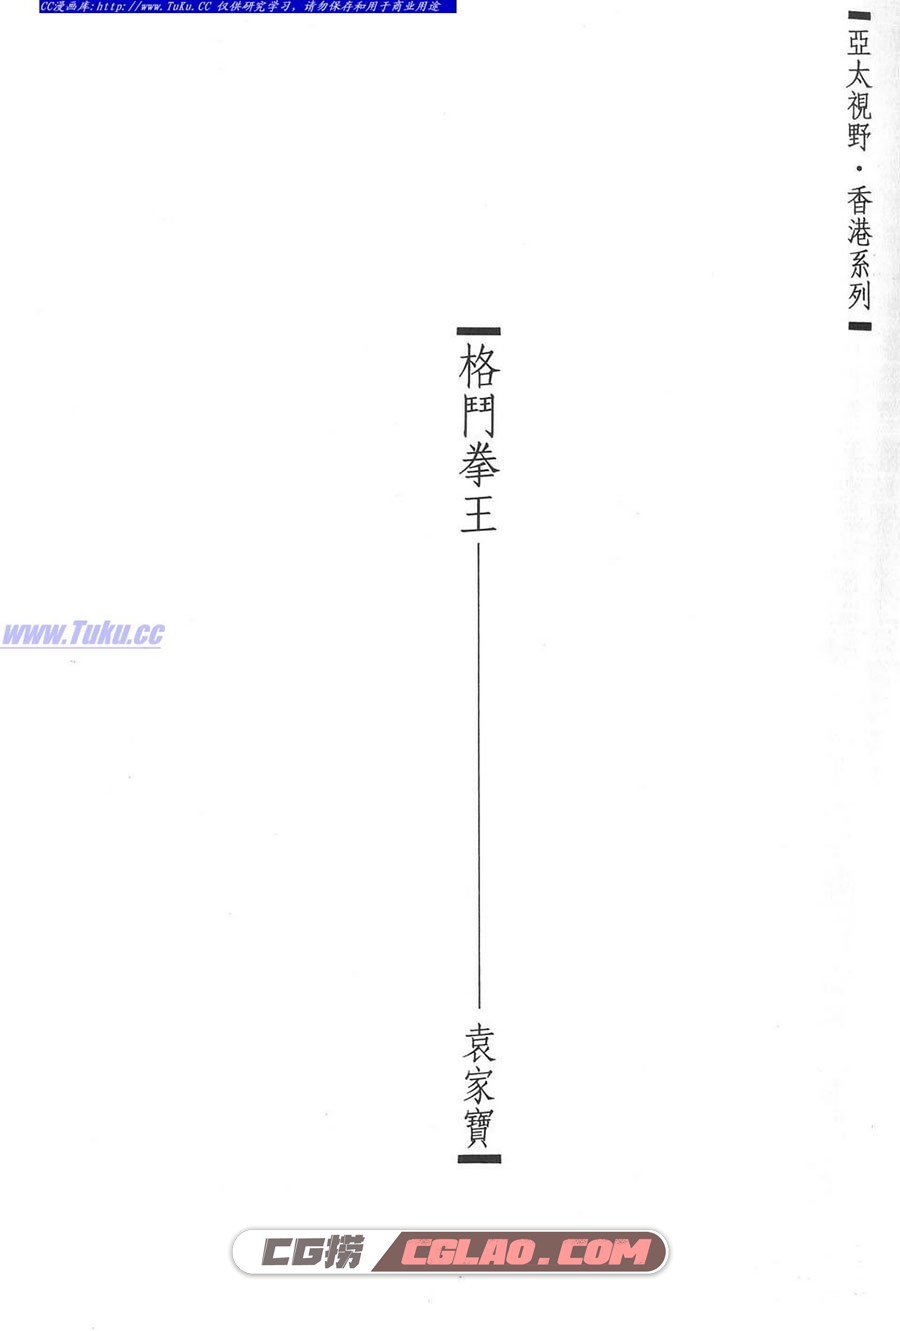 格斗拳王 袁家宝 1-4册 漫画全集下载 百度网盘,0006.jpg